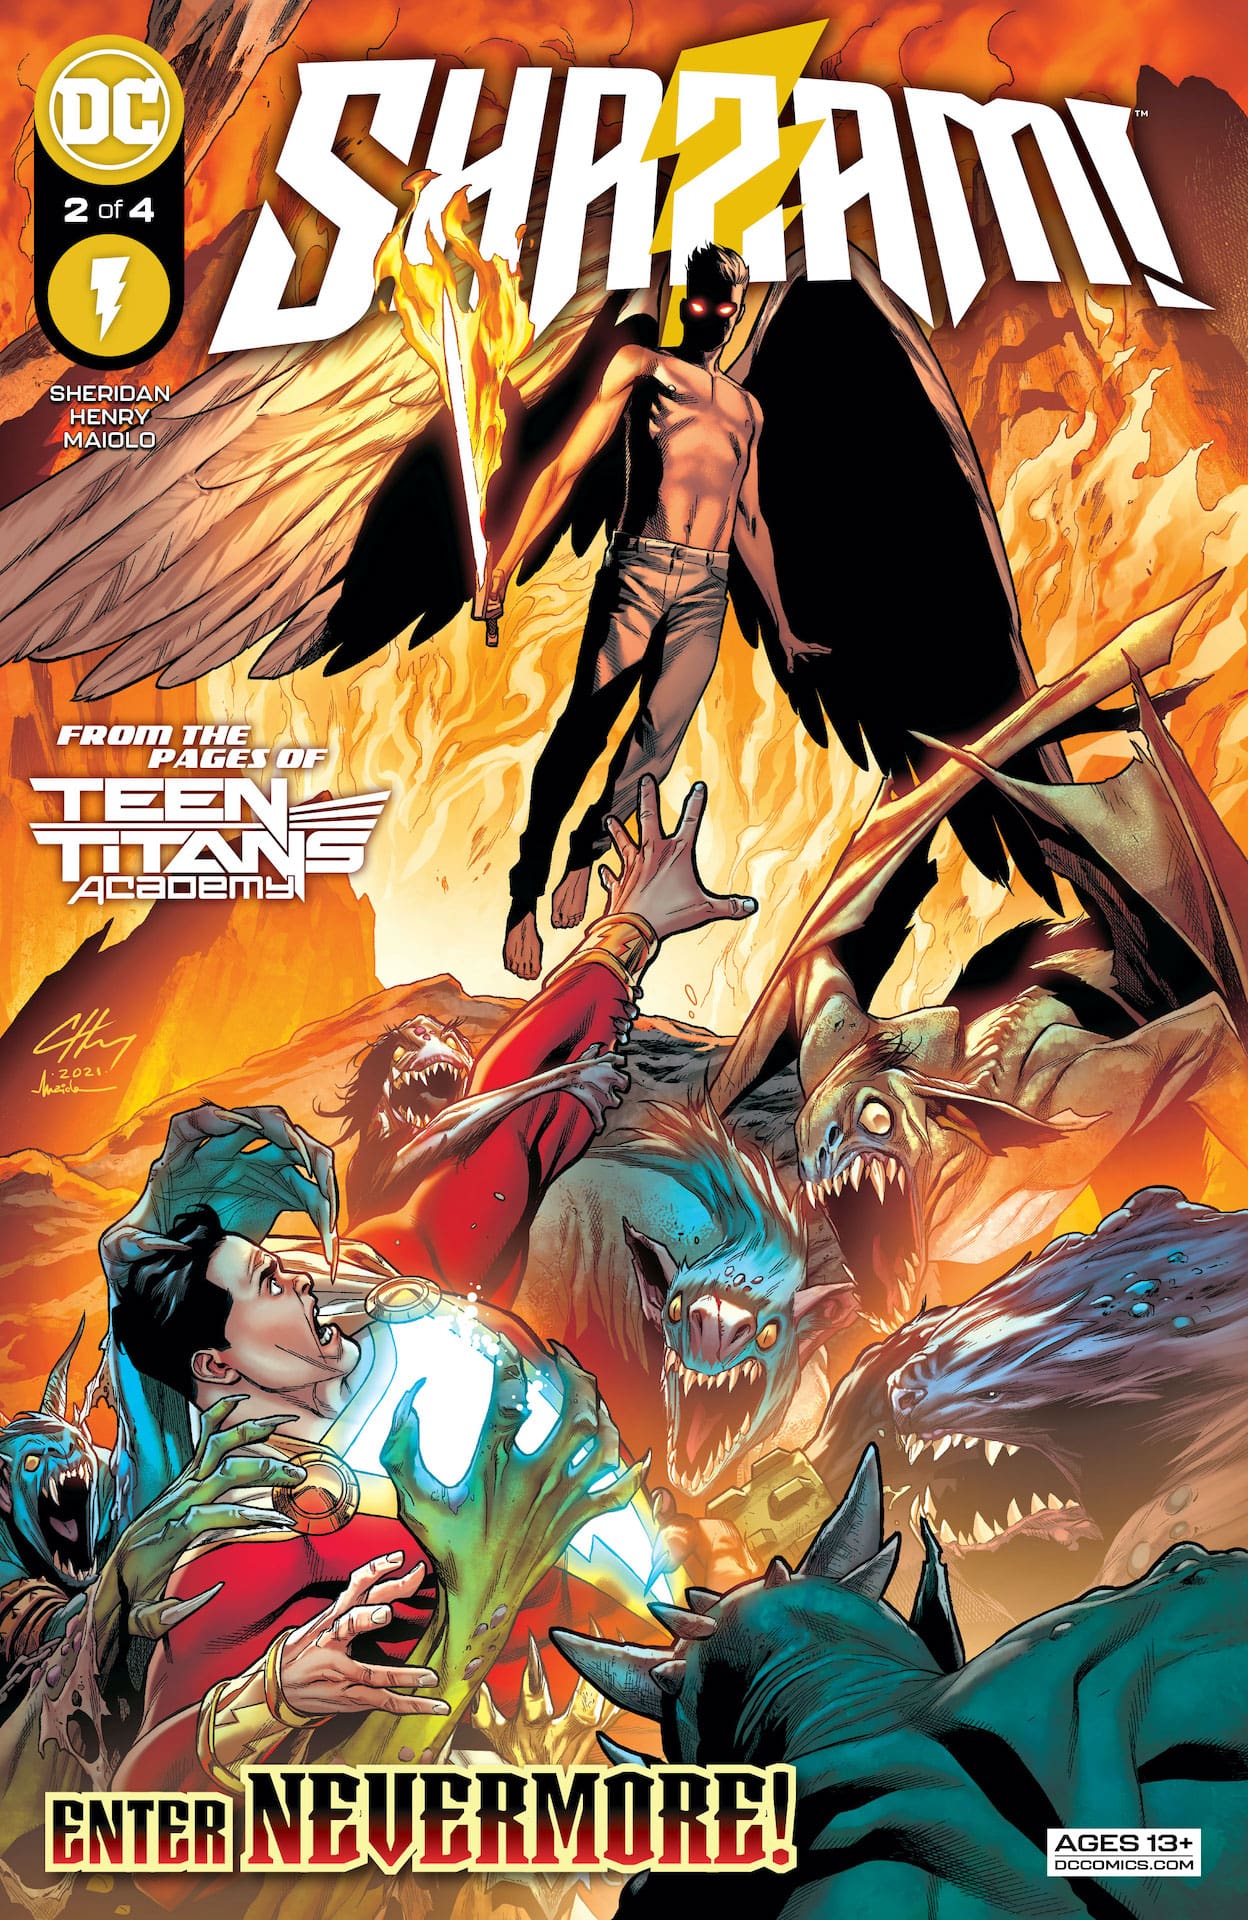 DC Preview: Shazam! #2